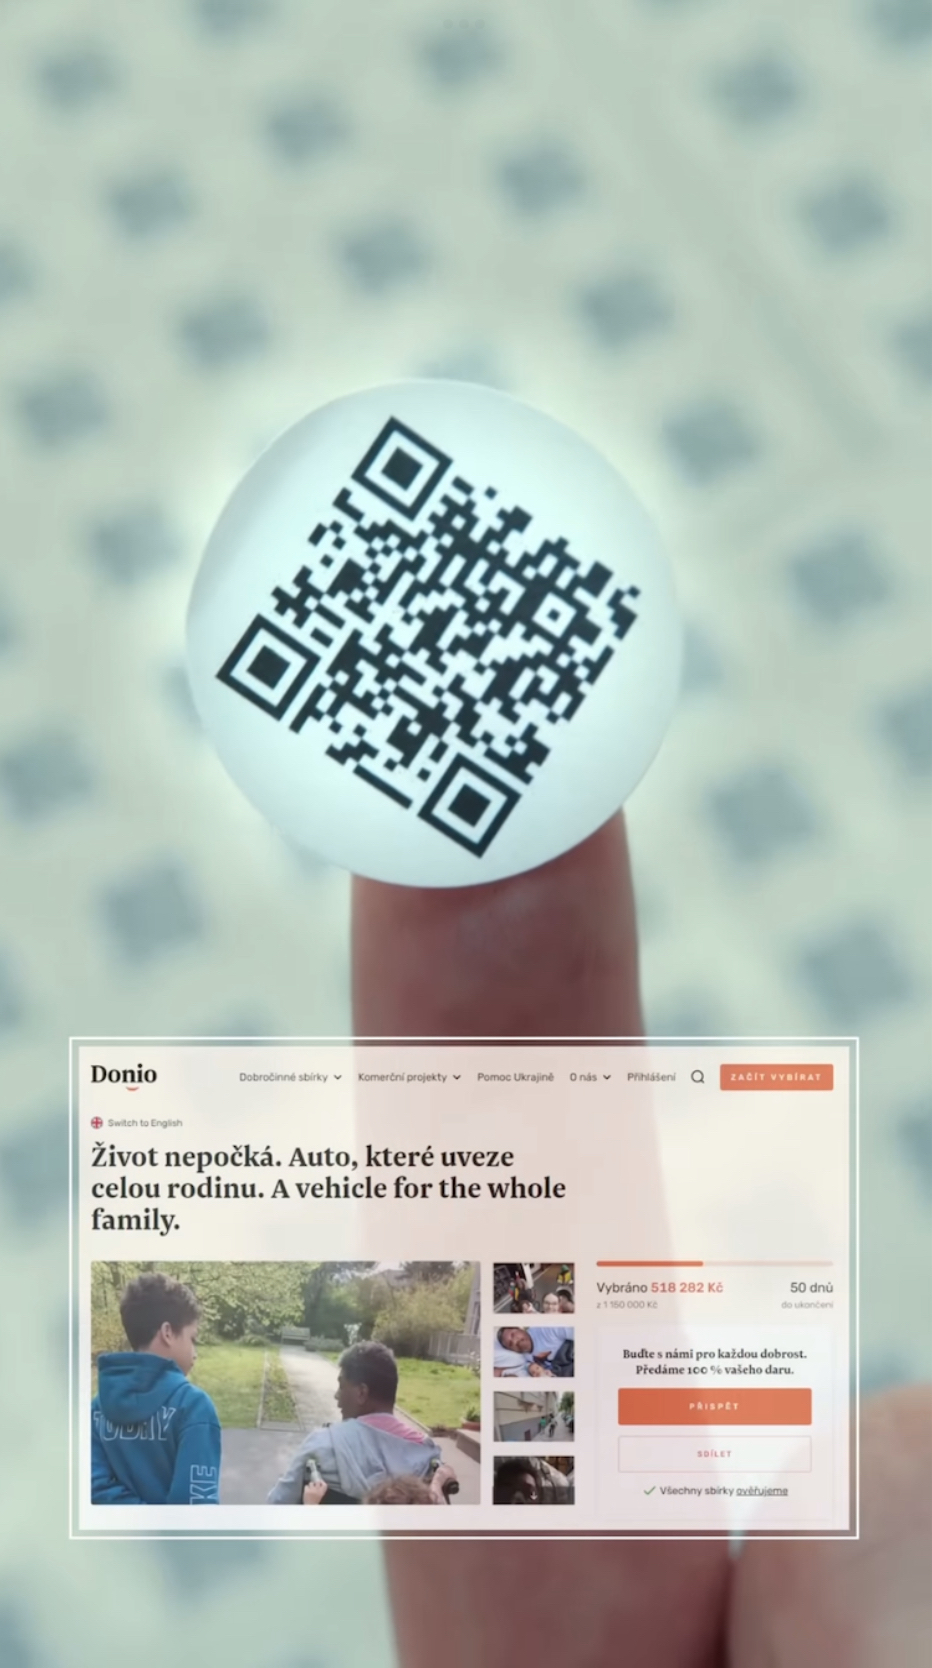 紙鈔貼上QR code，呼籲拾到錢的人去平台捐款。Youtube